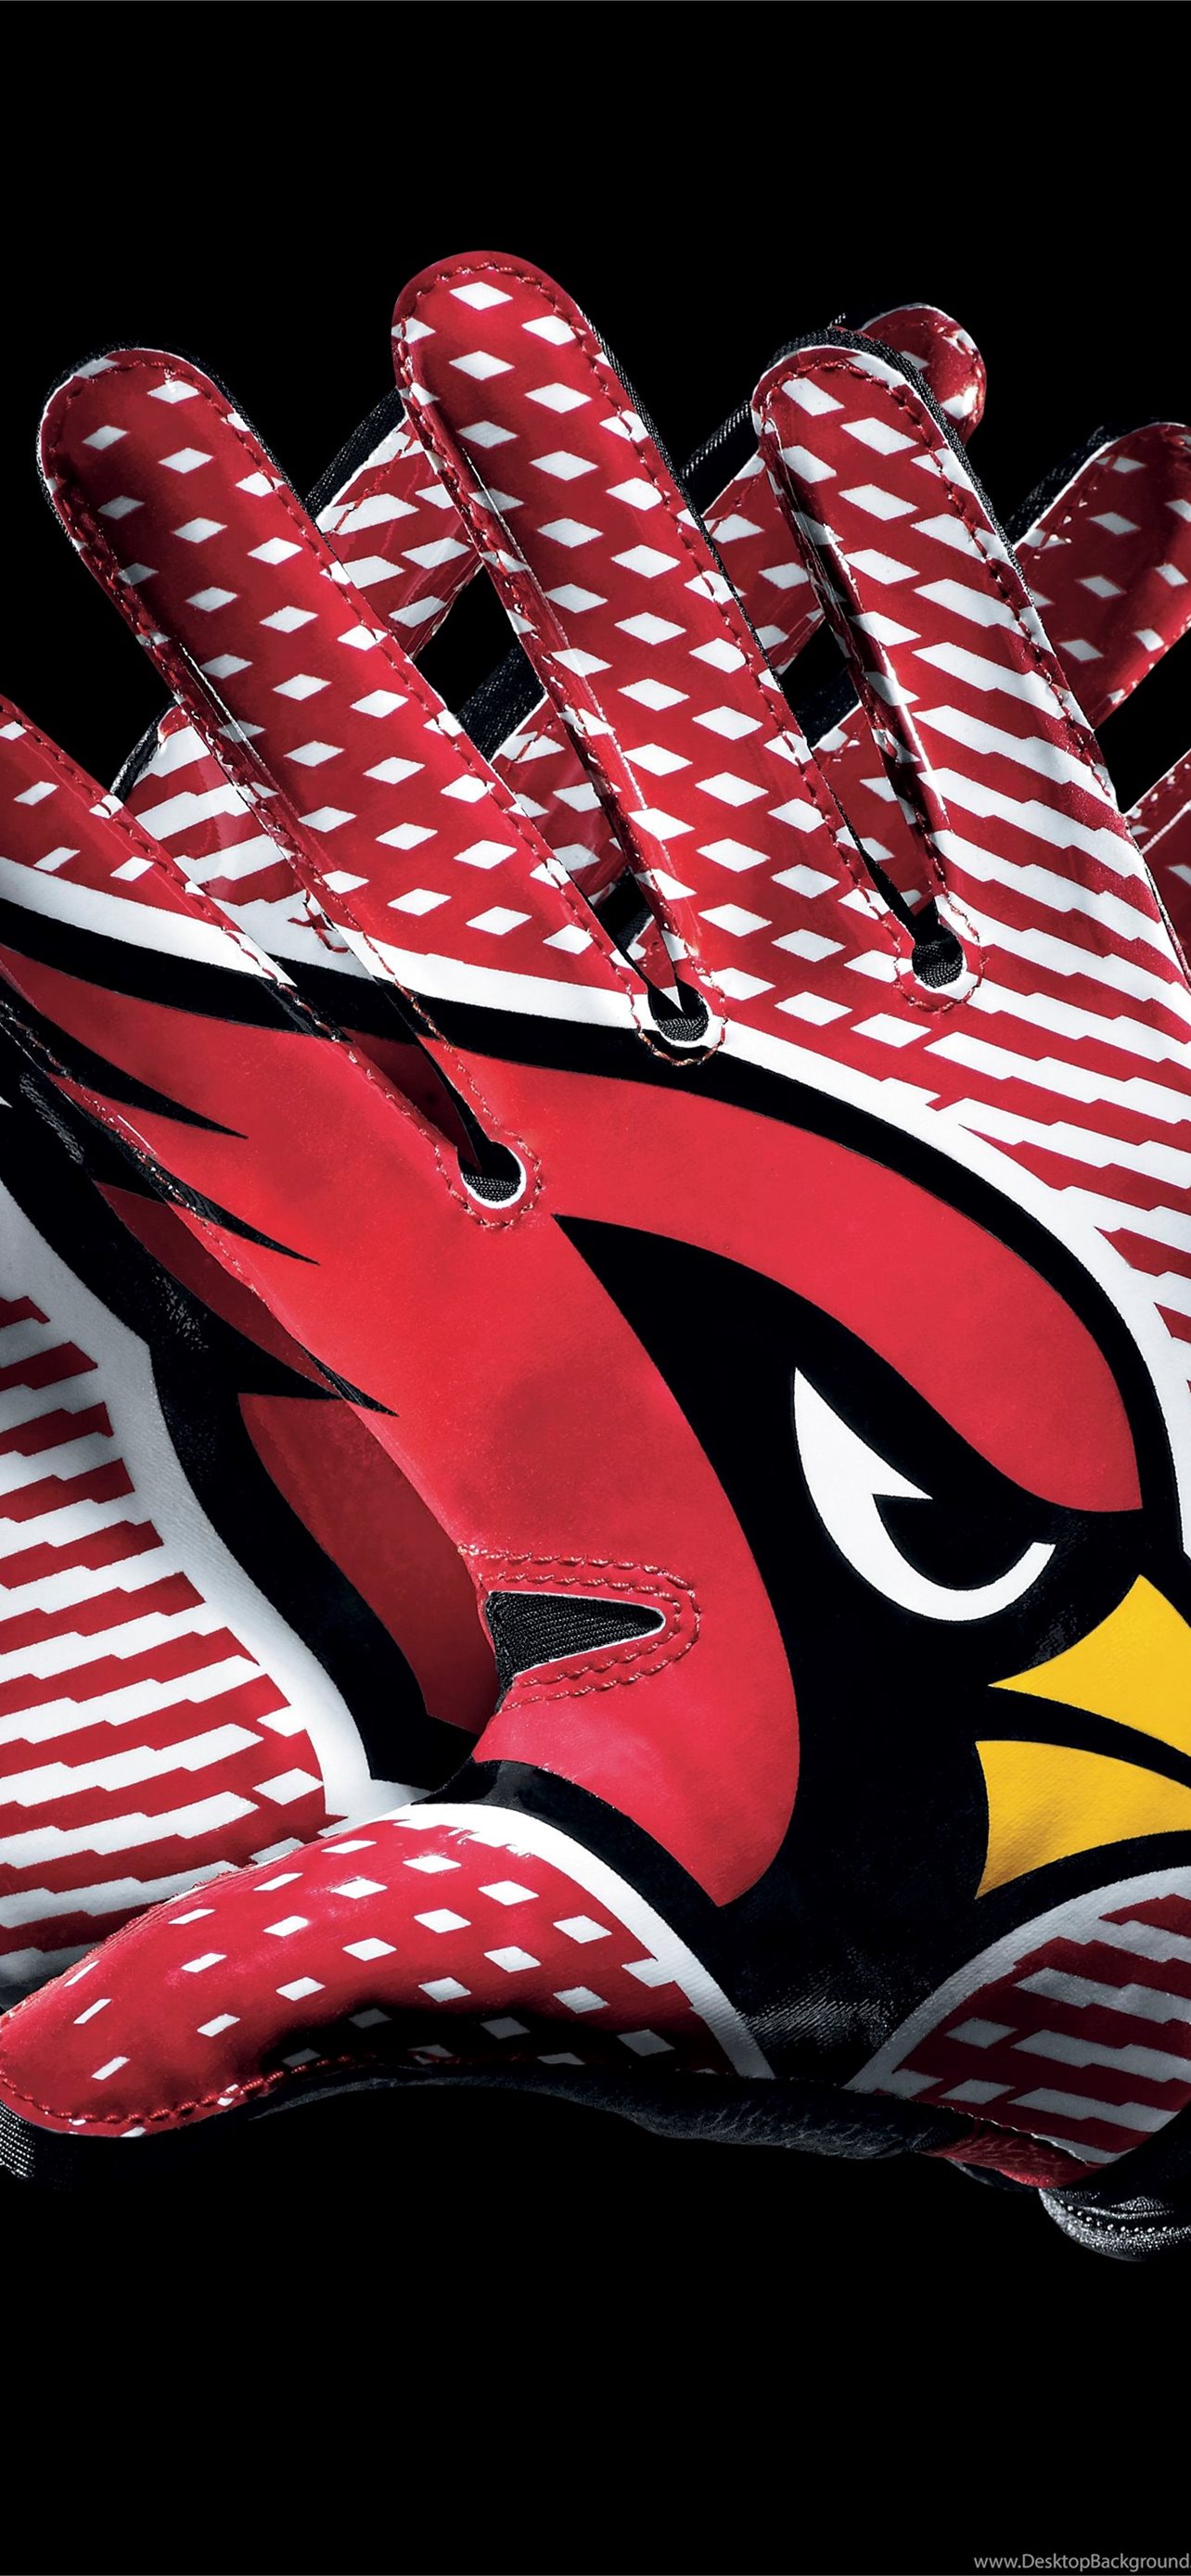 Arizona Cardinals iPhone Wallpaper